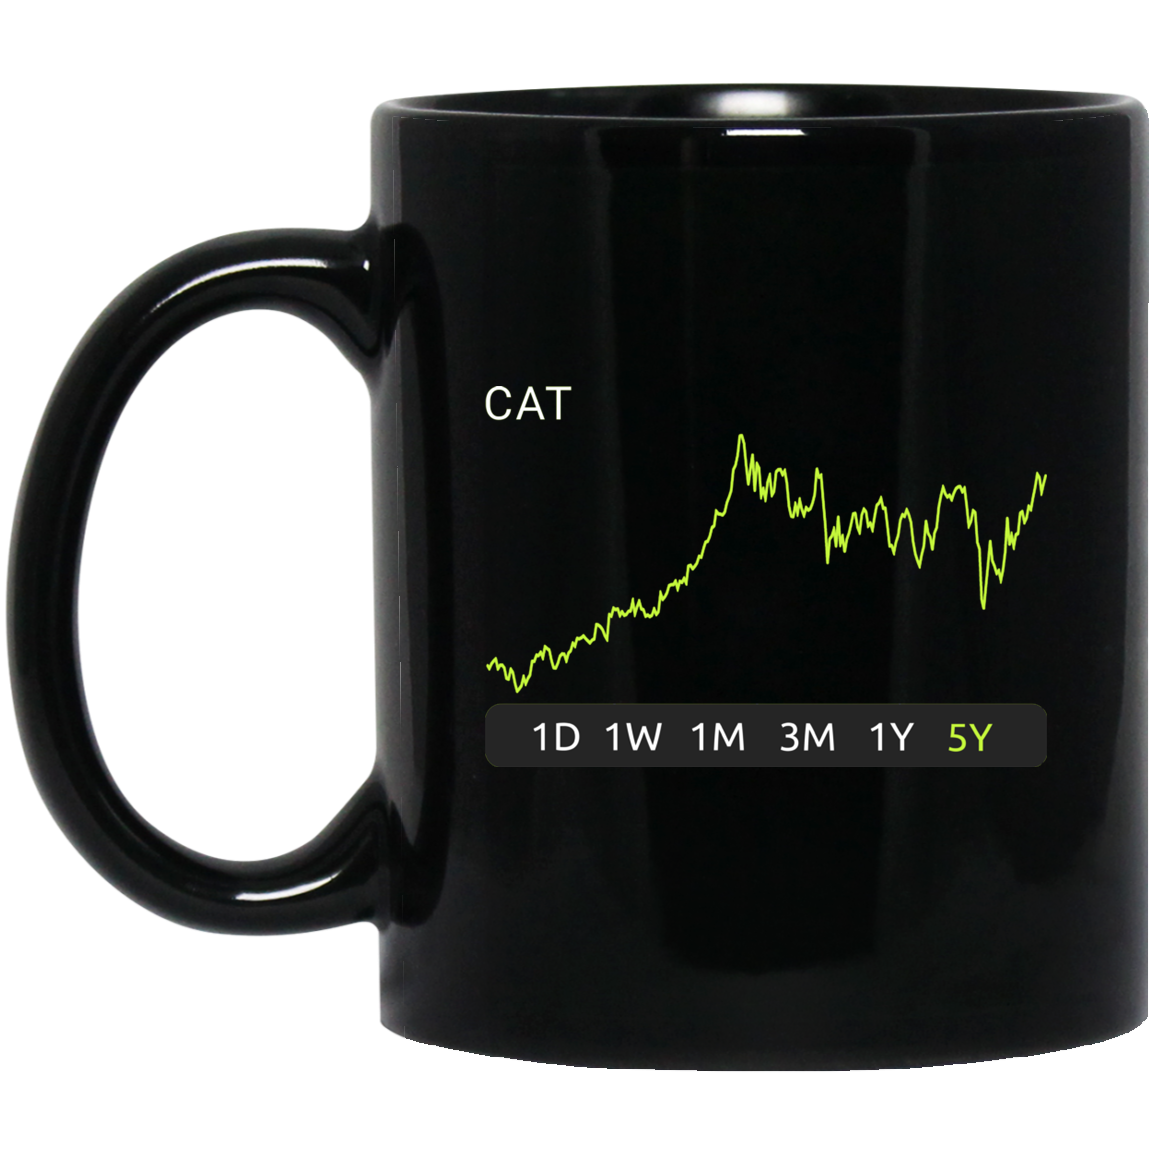 CAT Stock 5y Mug